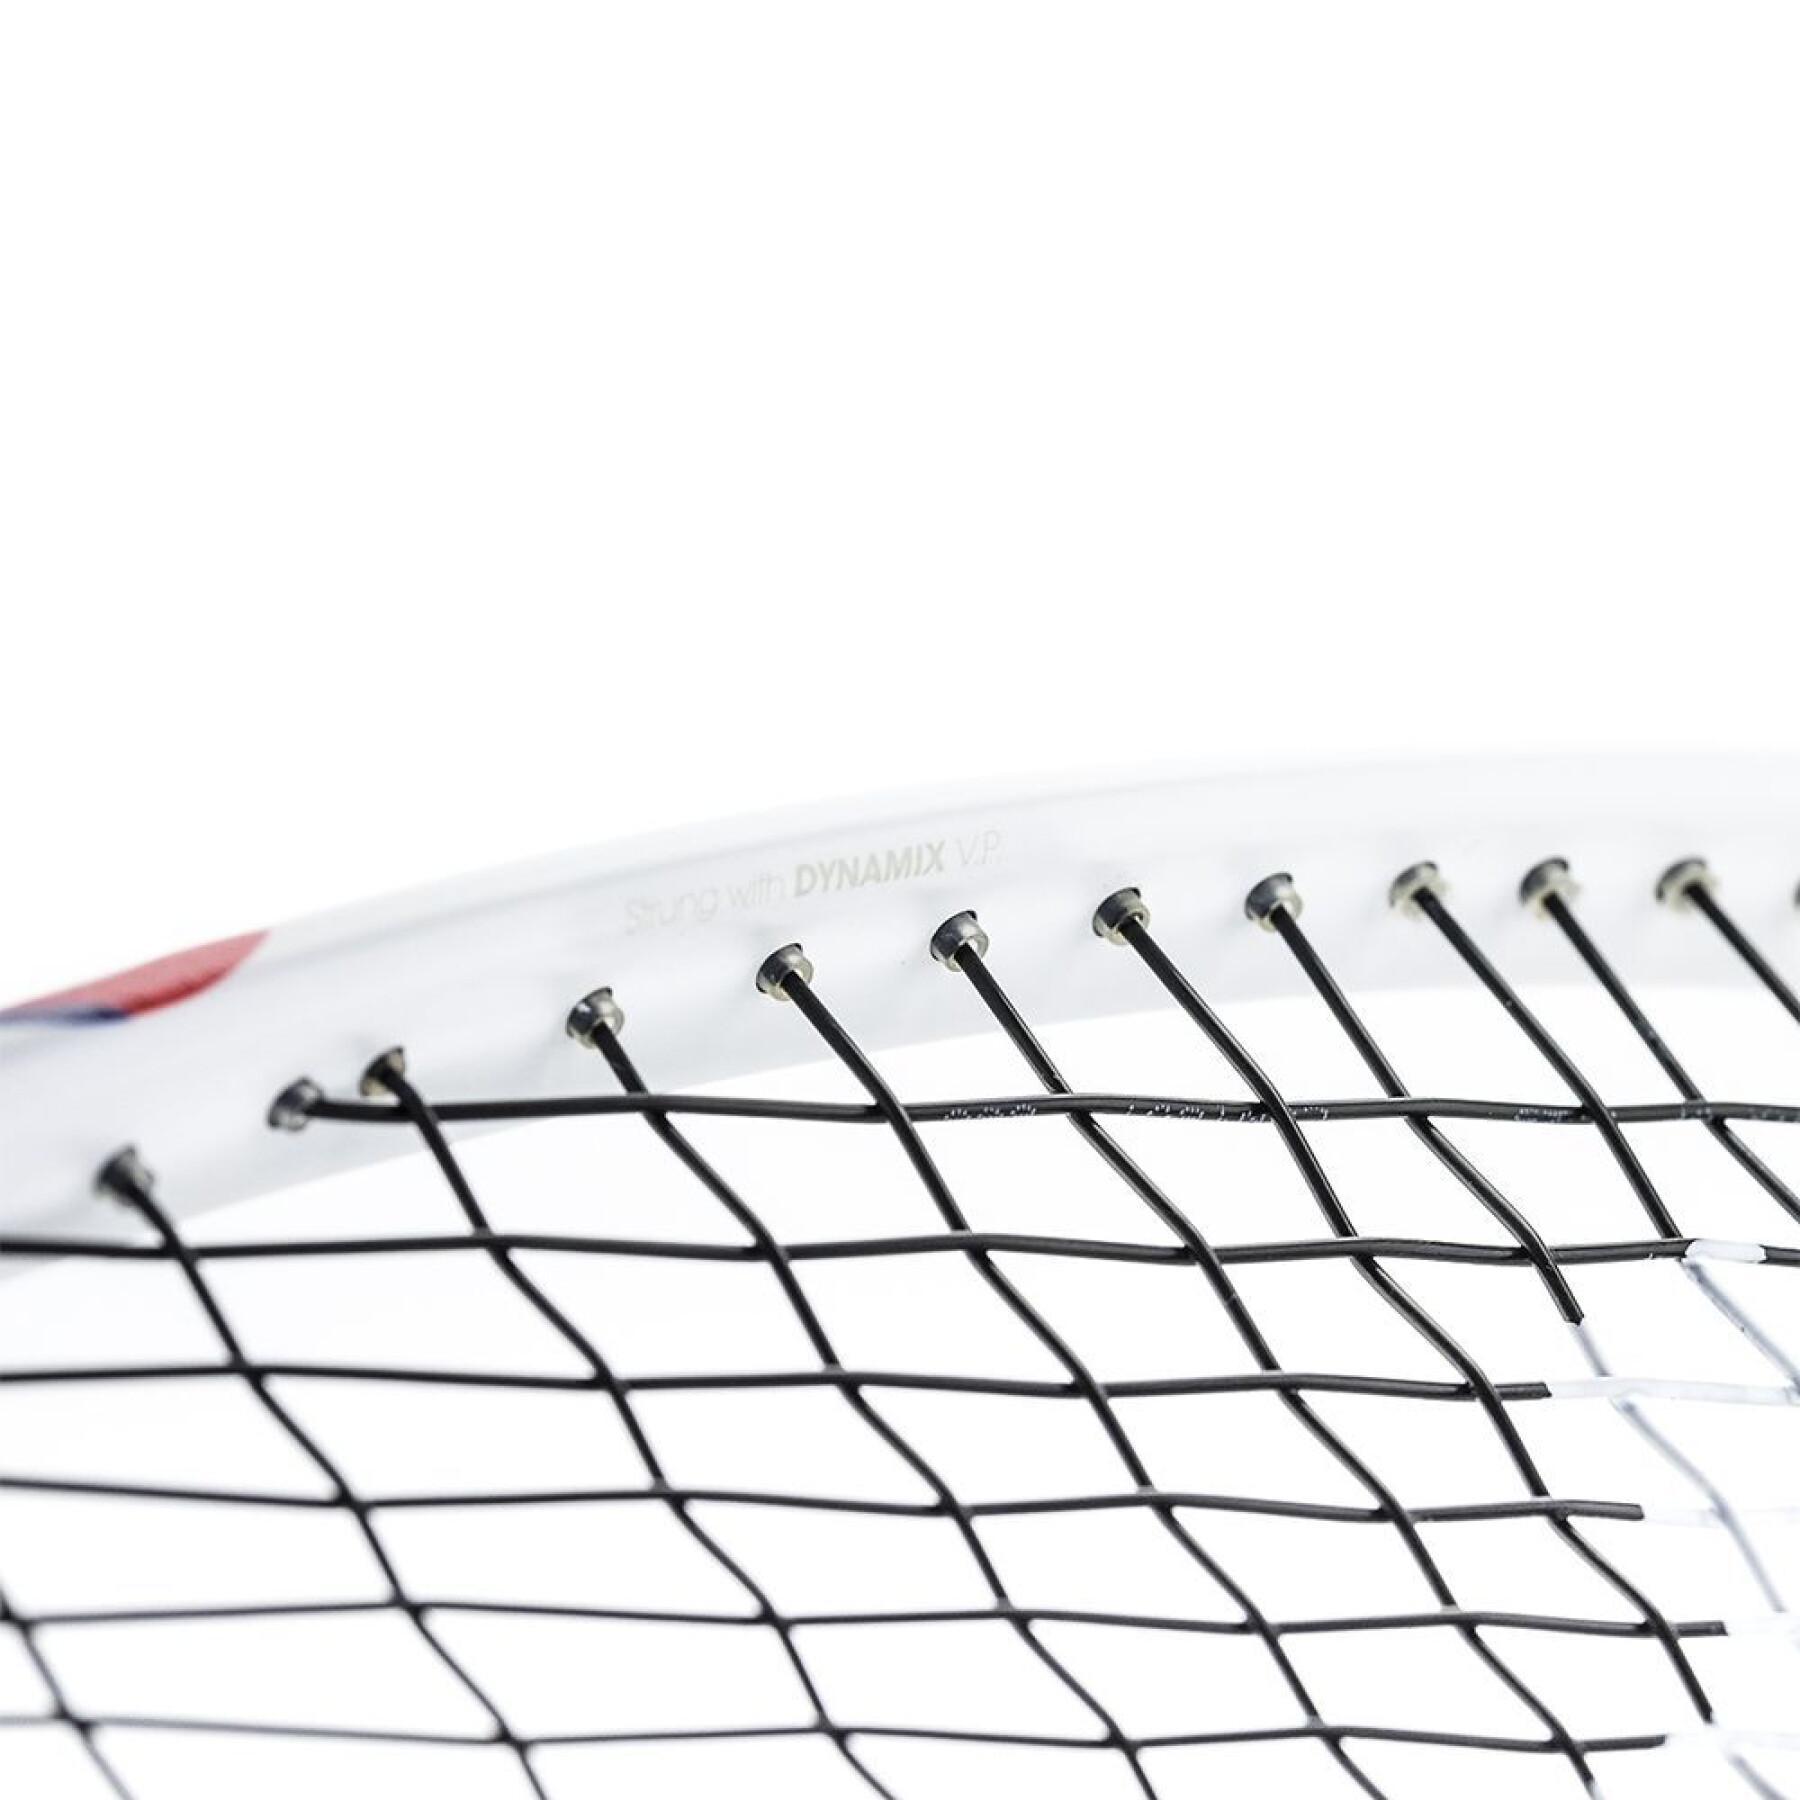 Raqueta de squash Tecnifibre Carboflex 130 X-TOP